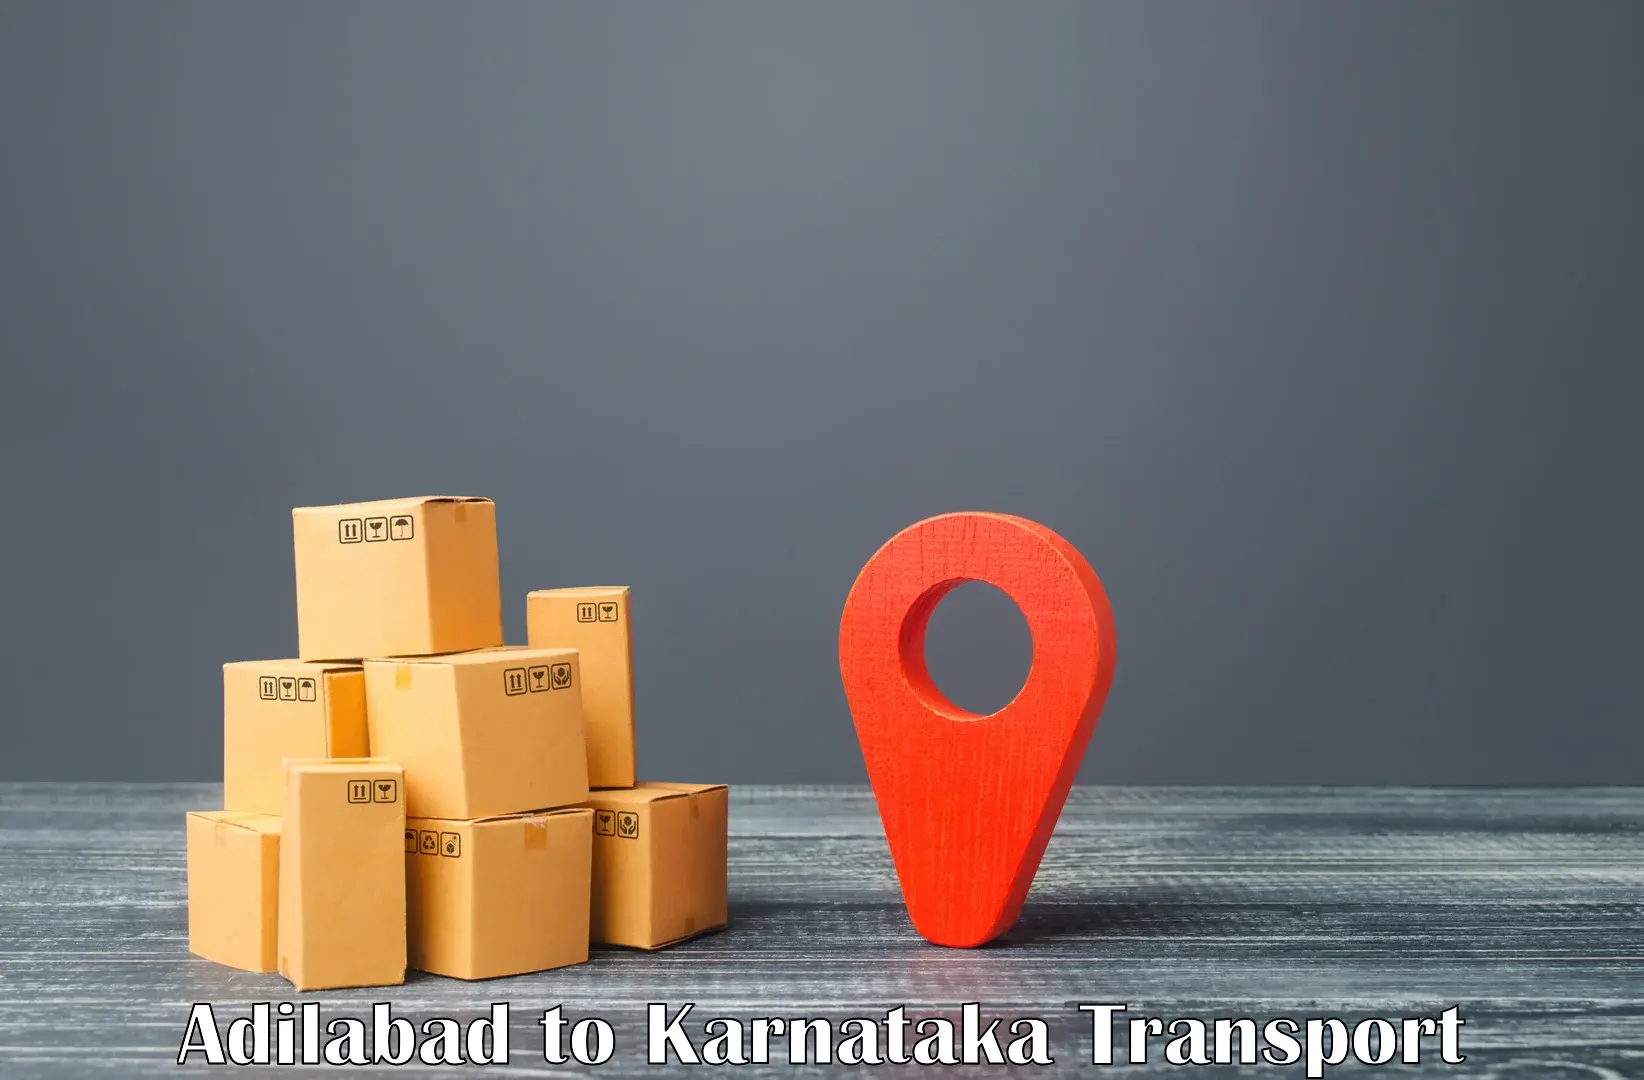 Truck transport companies in India Adilabad to Puttur